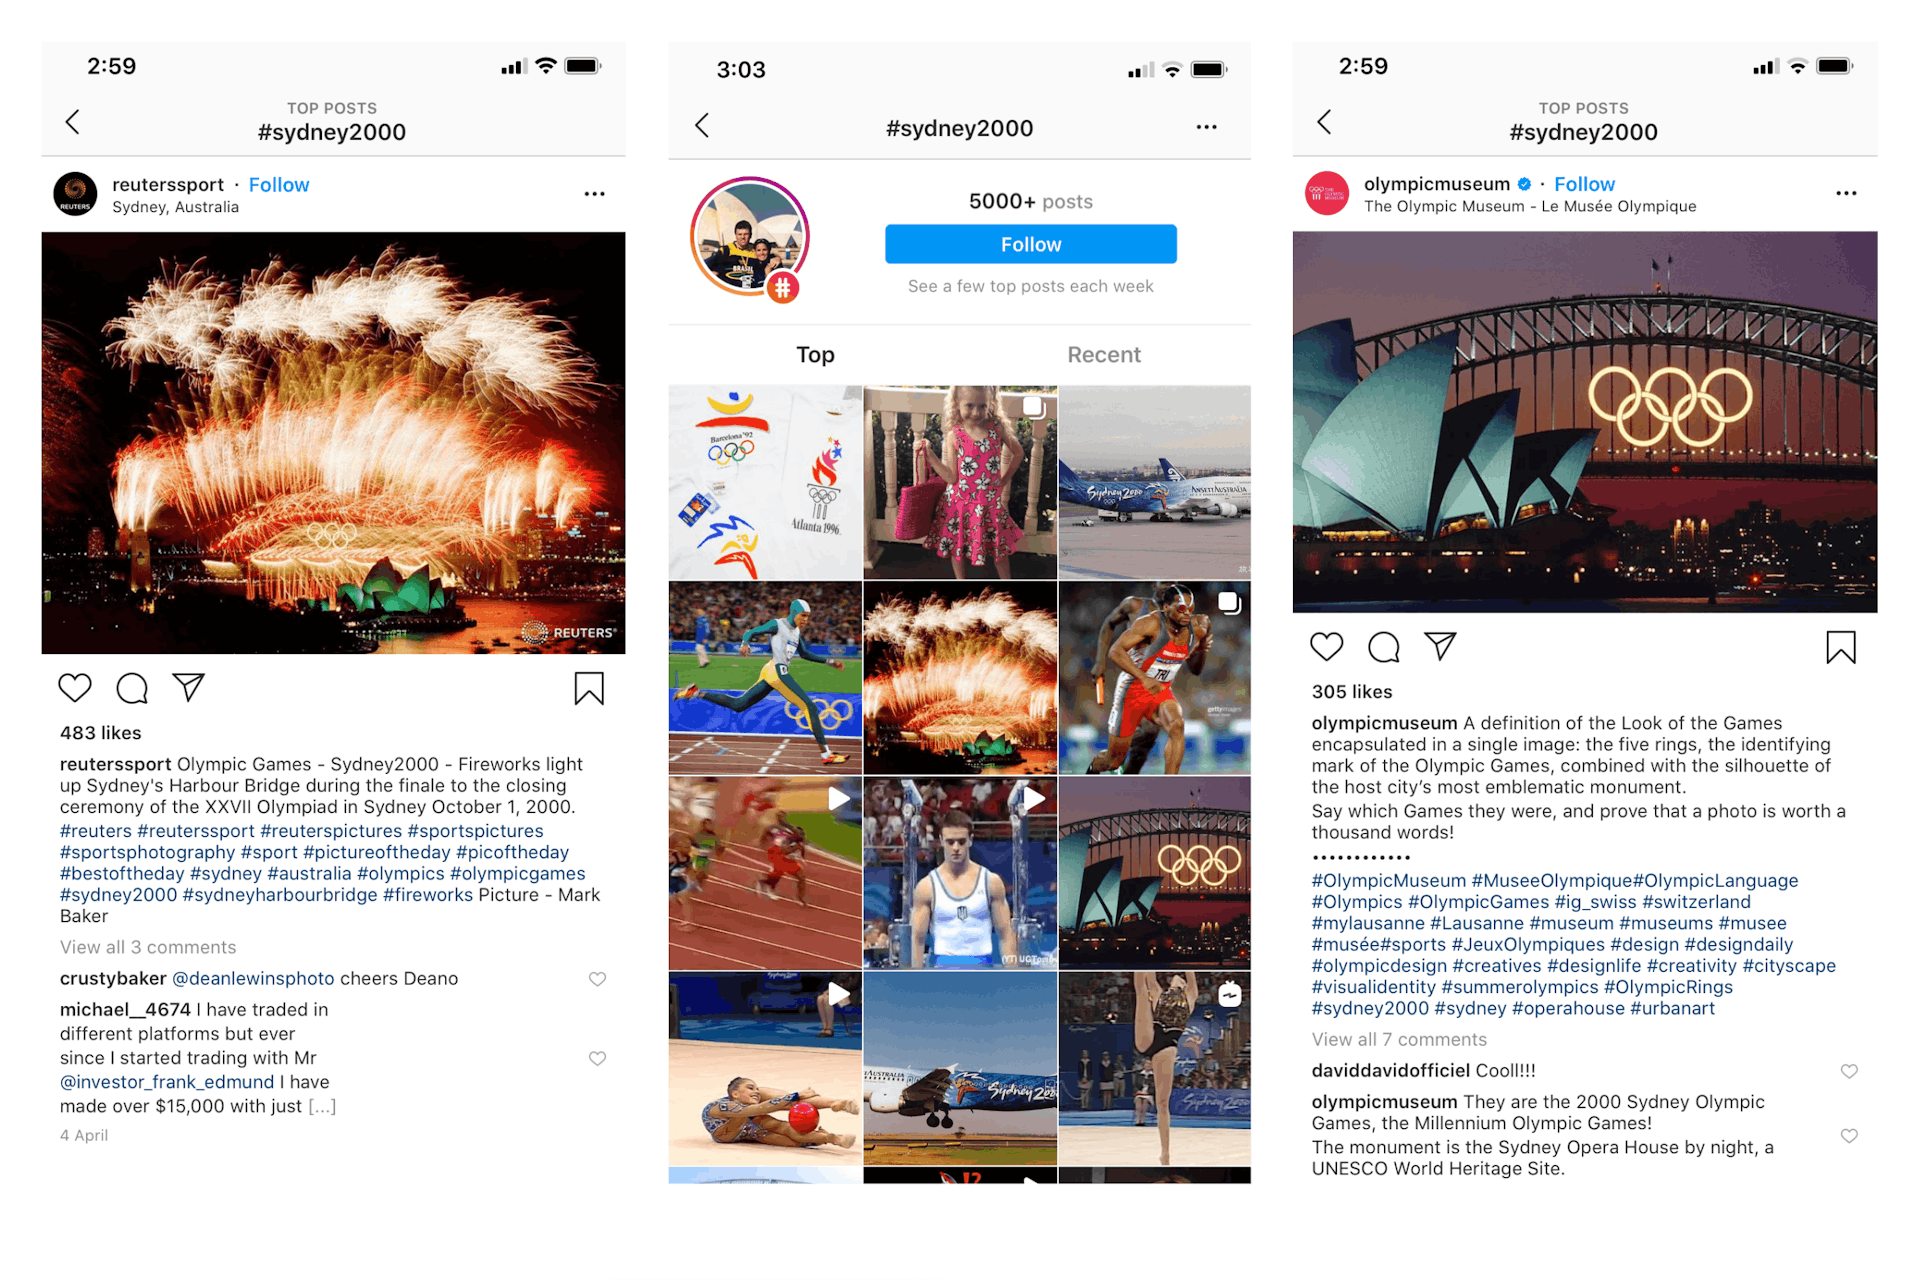 Von links nach rechts: Ein Post von Reuters bezüglich der 2000 Sydney Olympics, der Hashtag Feed für das Tag, ein Post vom Olympic Museum, der Sydney Olympics erwähnt